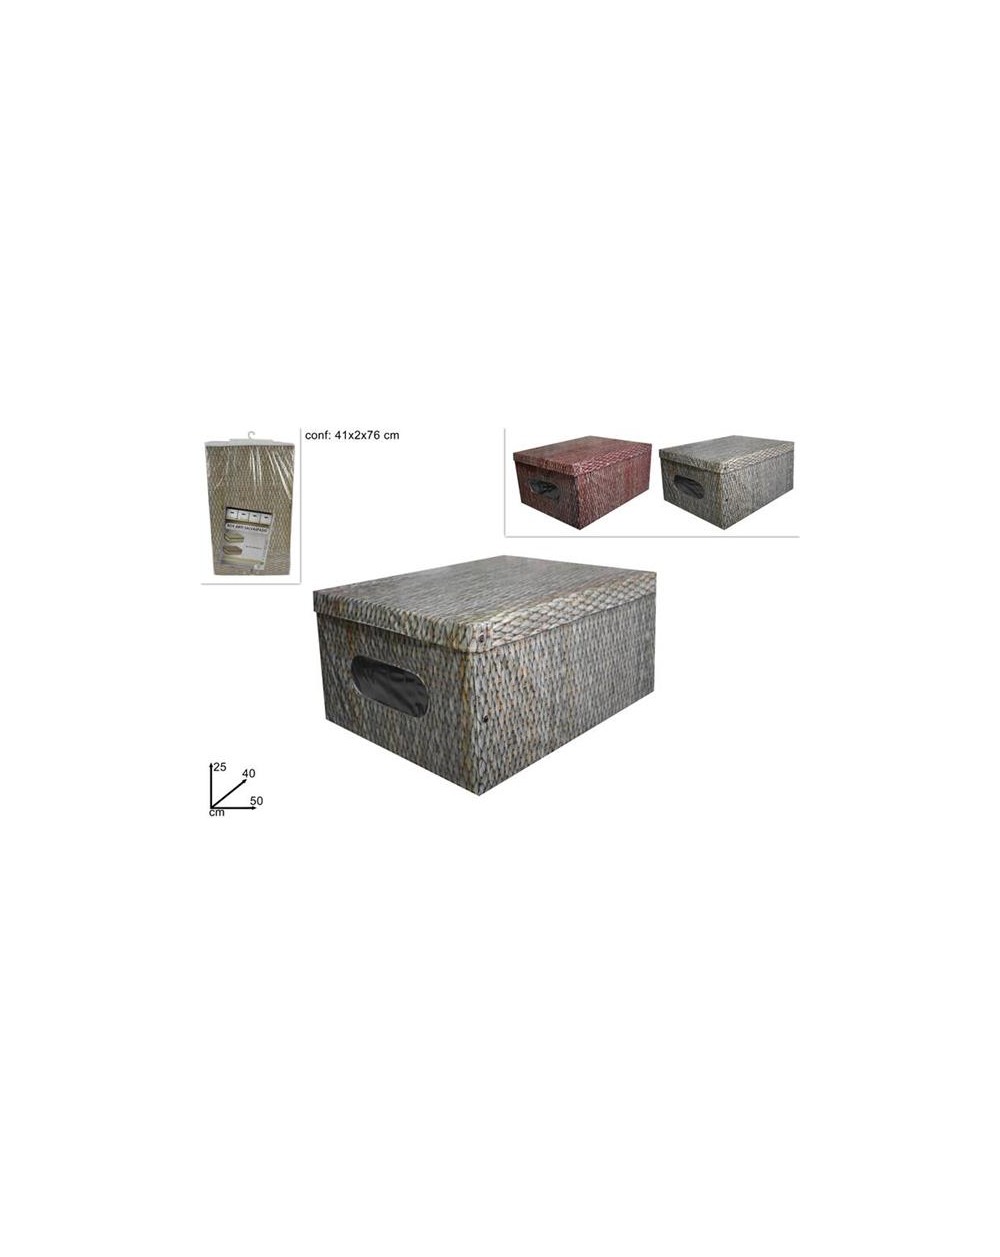 BOX ABITI IN PVC 50x40x25 FANTASIA  DEV19010151